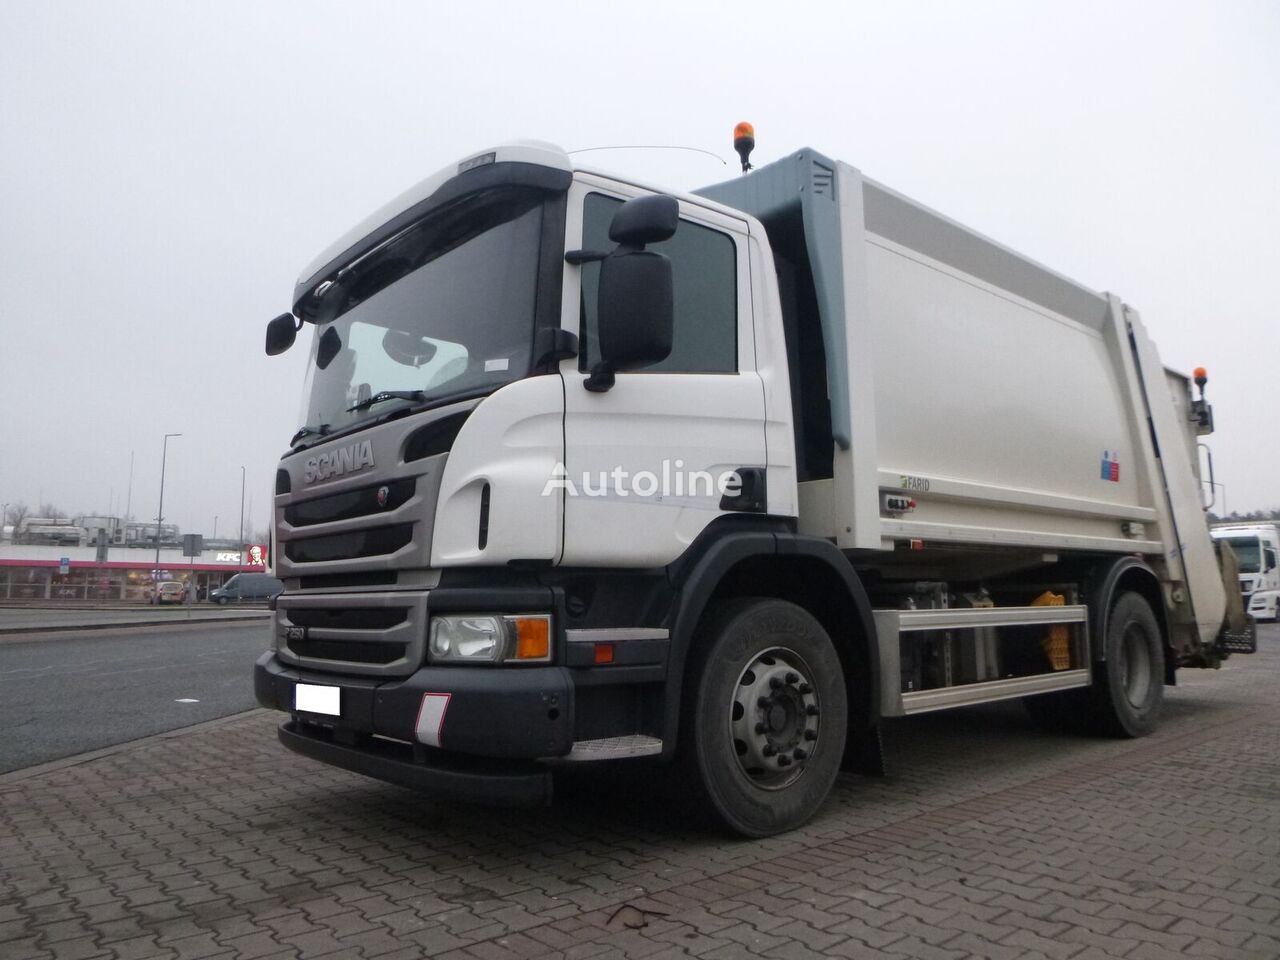 Scania P250 śmieciarka 1 komorowa, Euro 6, sprzedaż/Wynajem, gwarancja, garbage truck